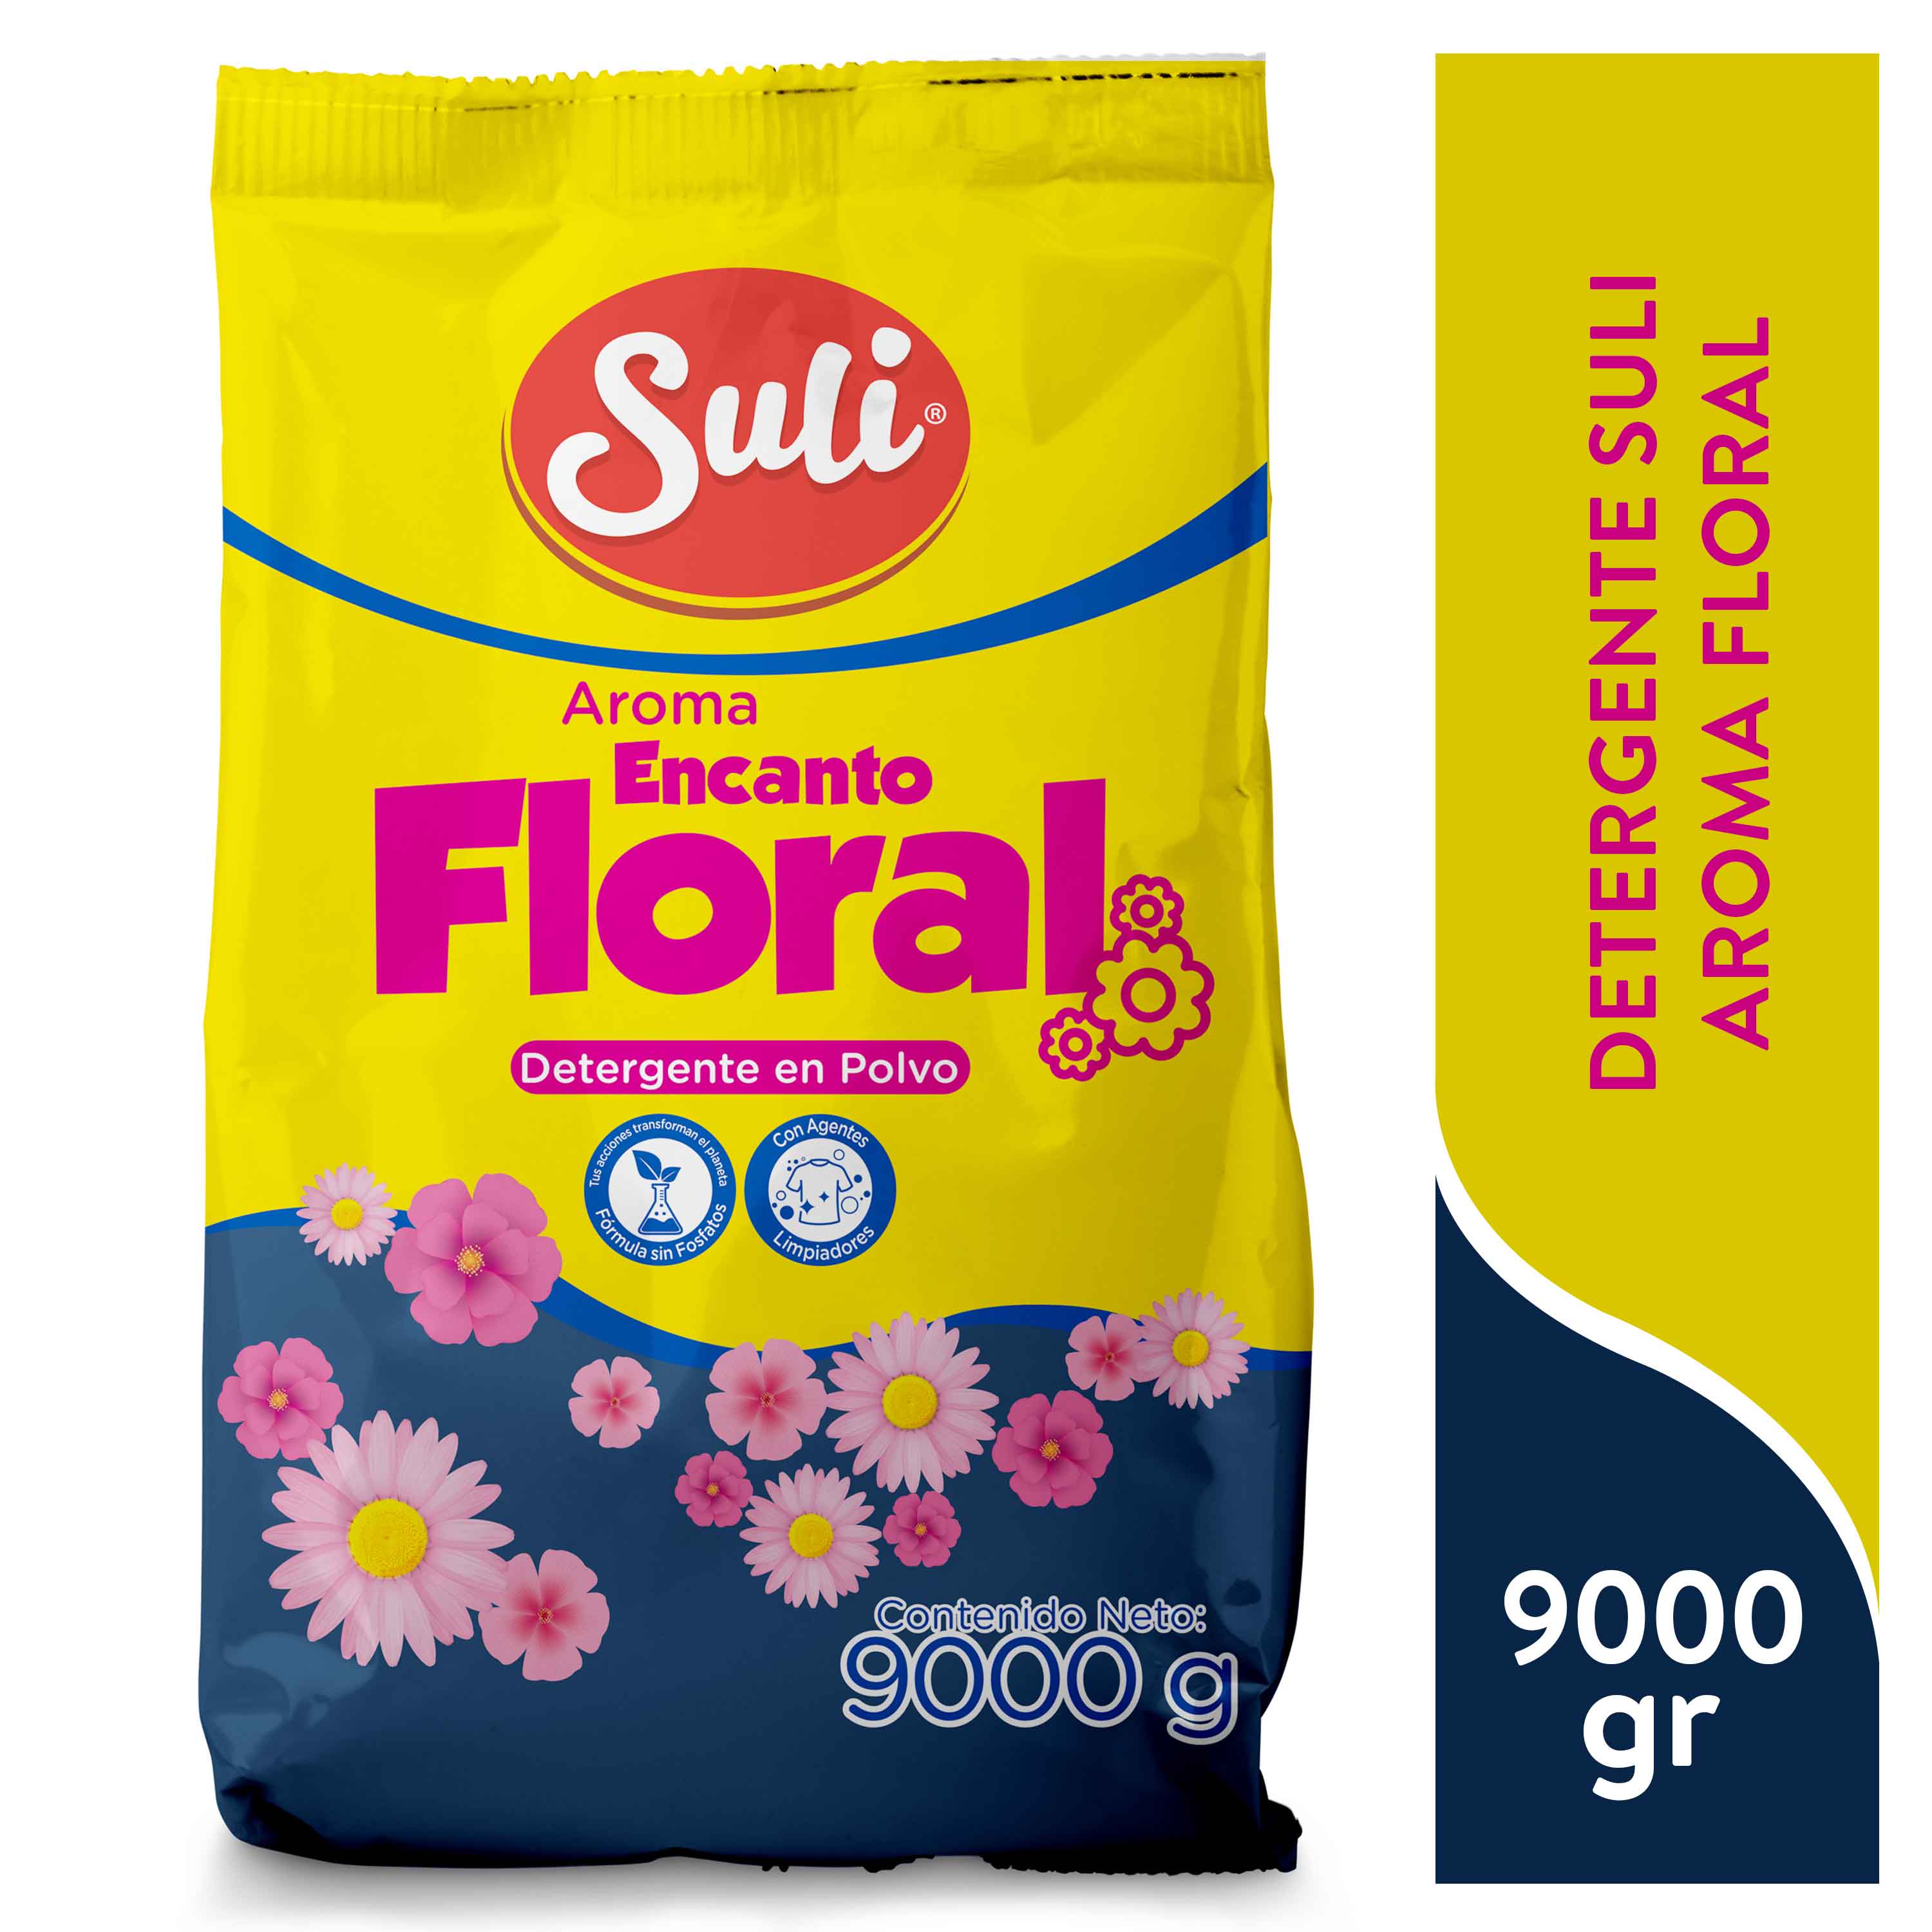 Detergente tiras floral 40 usos - Veritas Shop